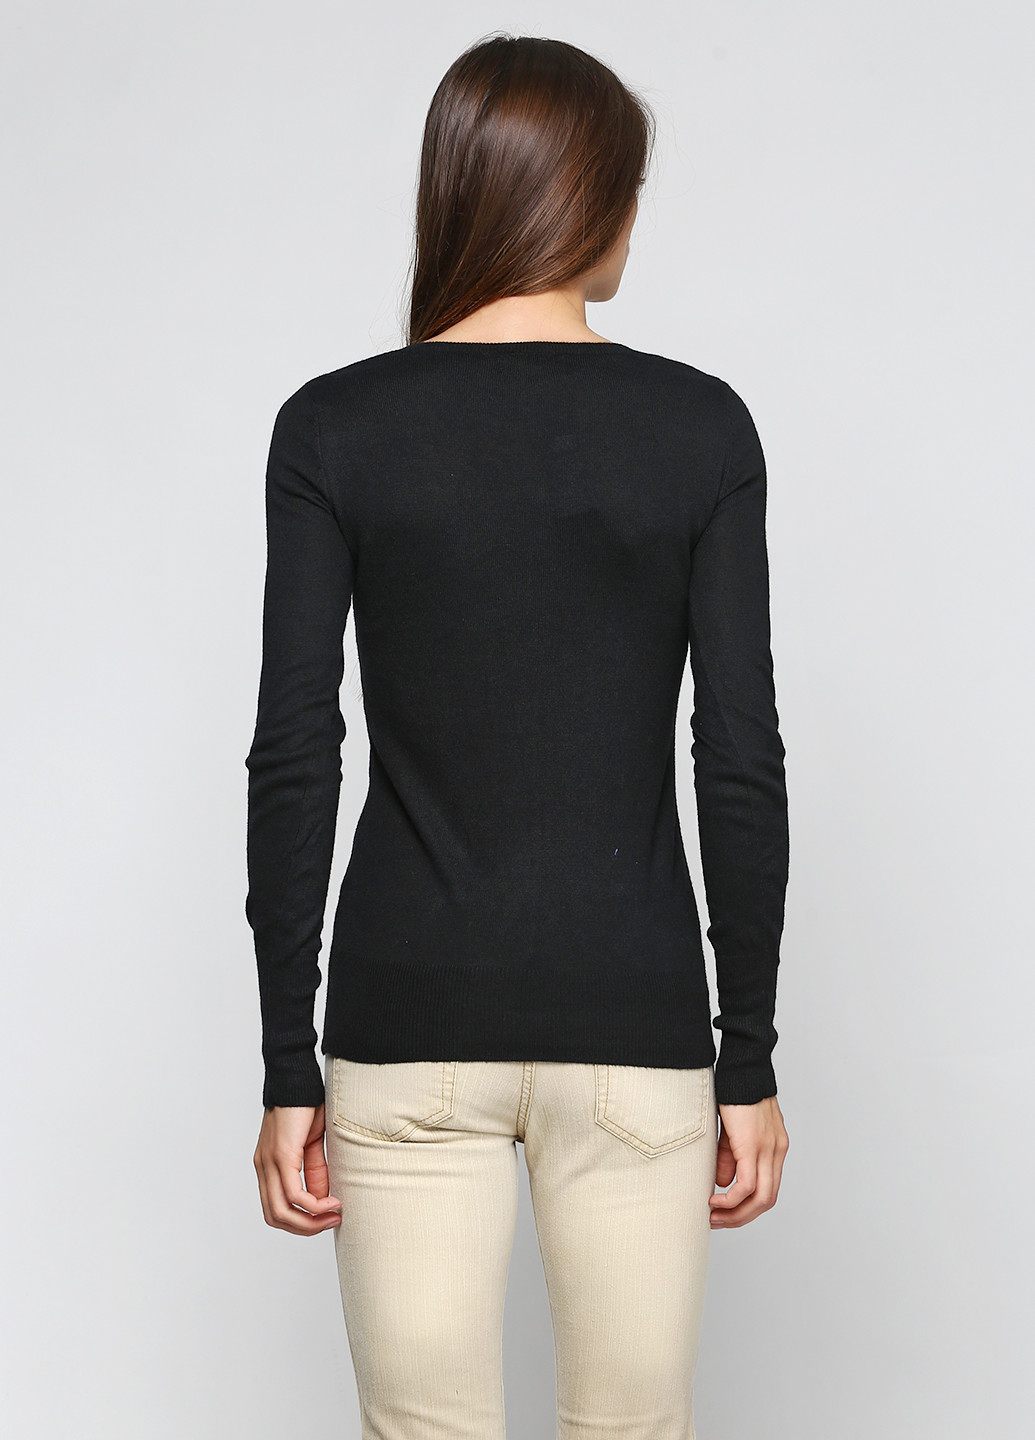 Черный демисезонный пуловер пуловер Mossimo Supply Co